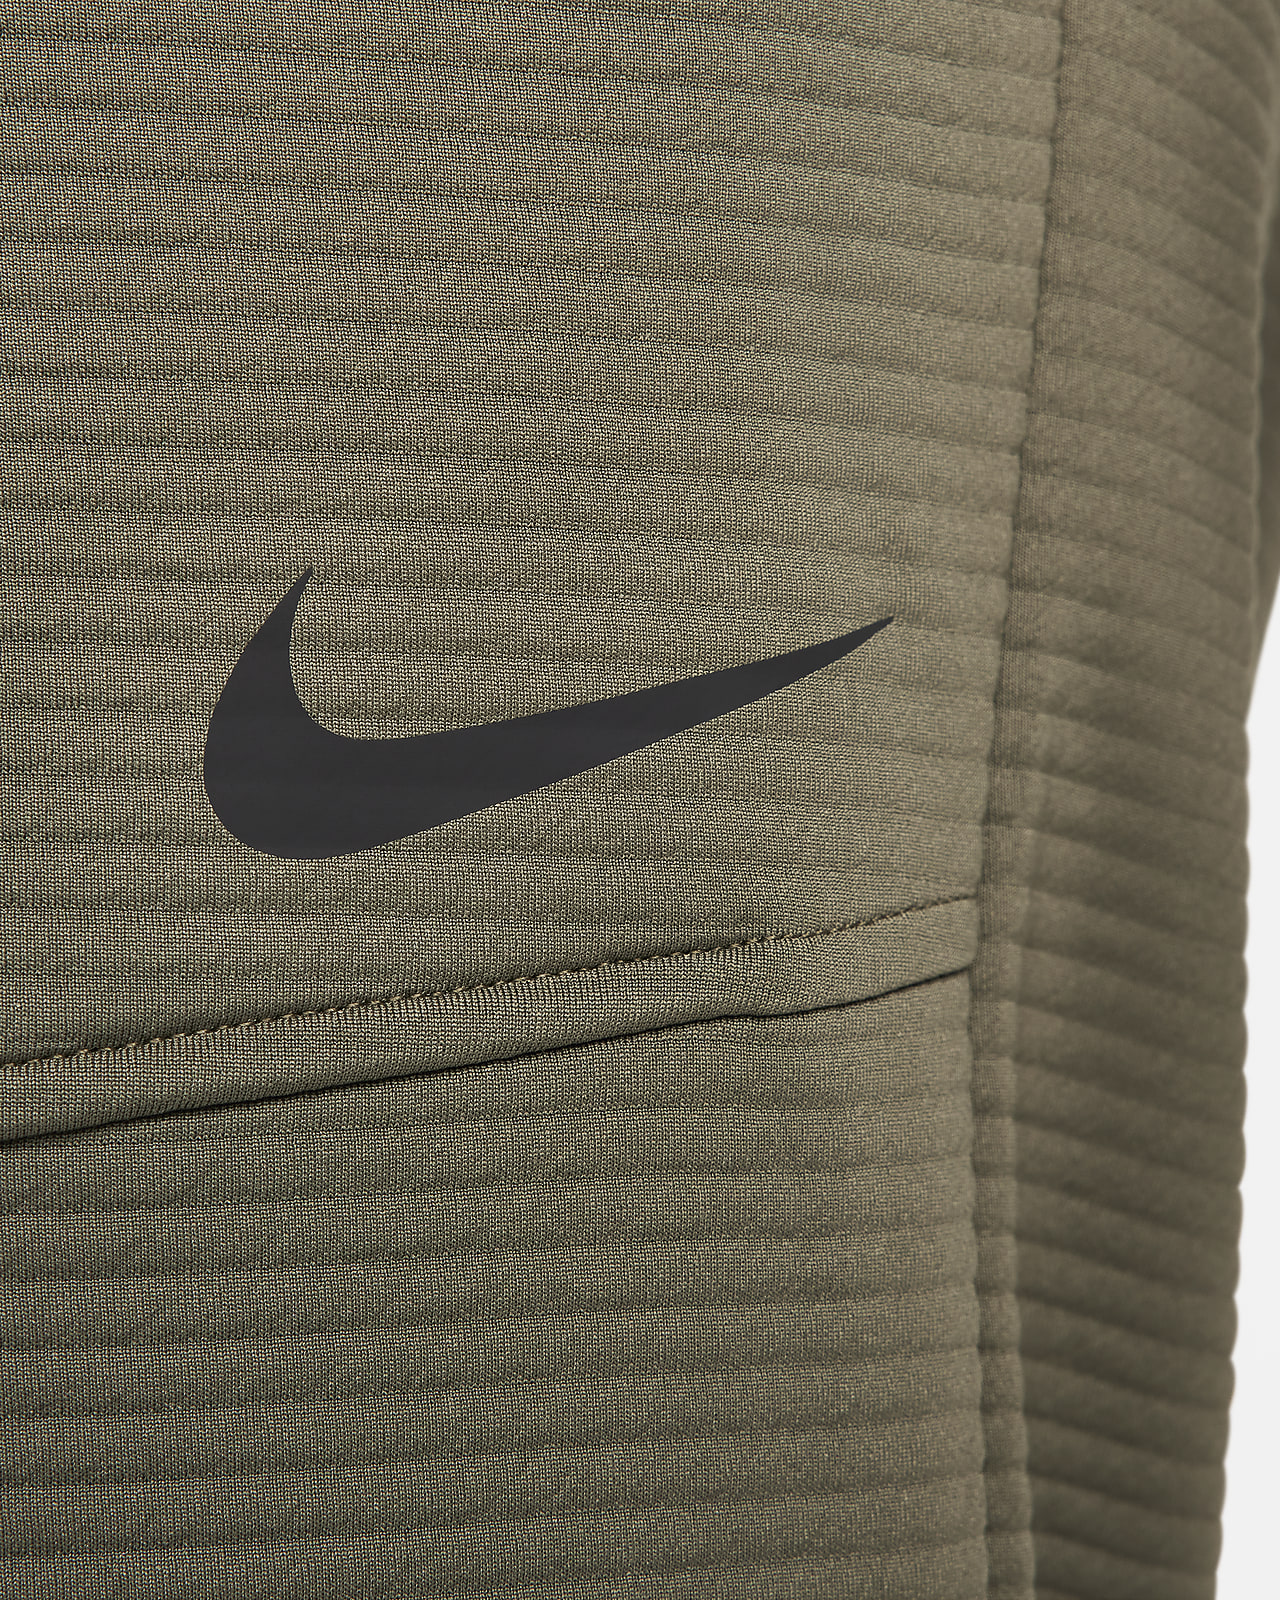 Nike Men's Dri-FIT Fleece Fitness Sweatshirt